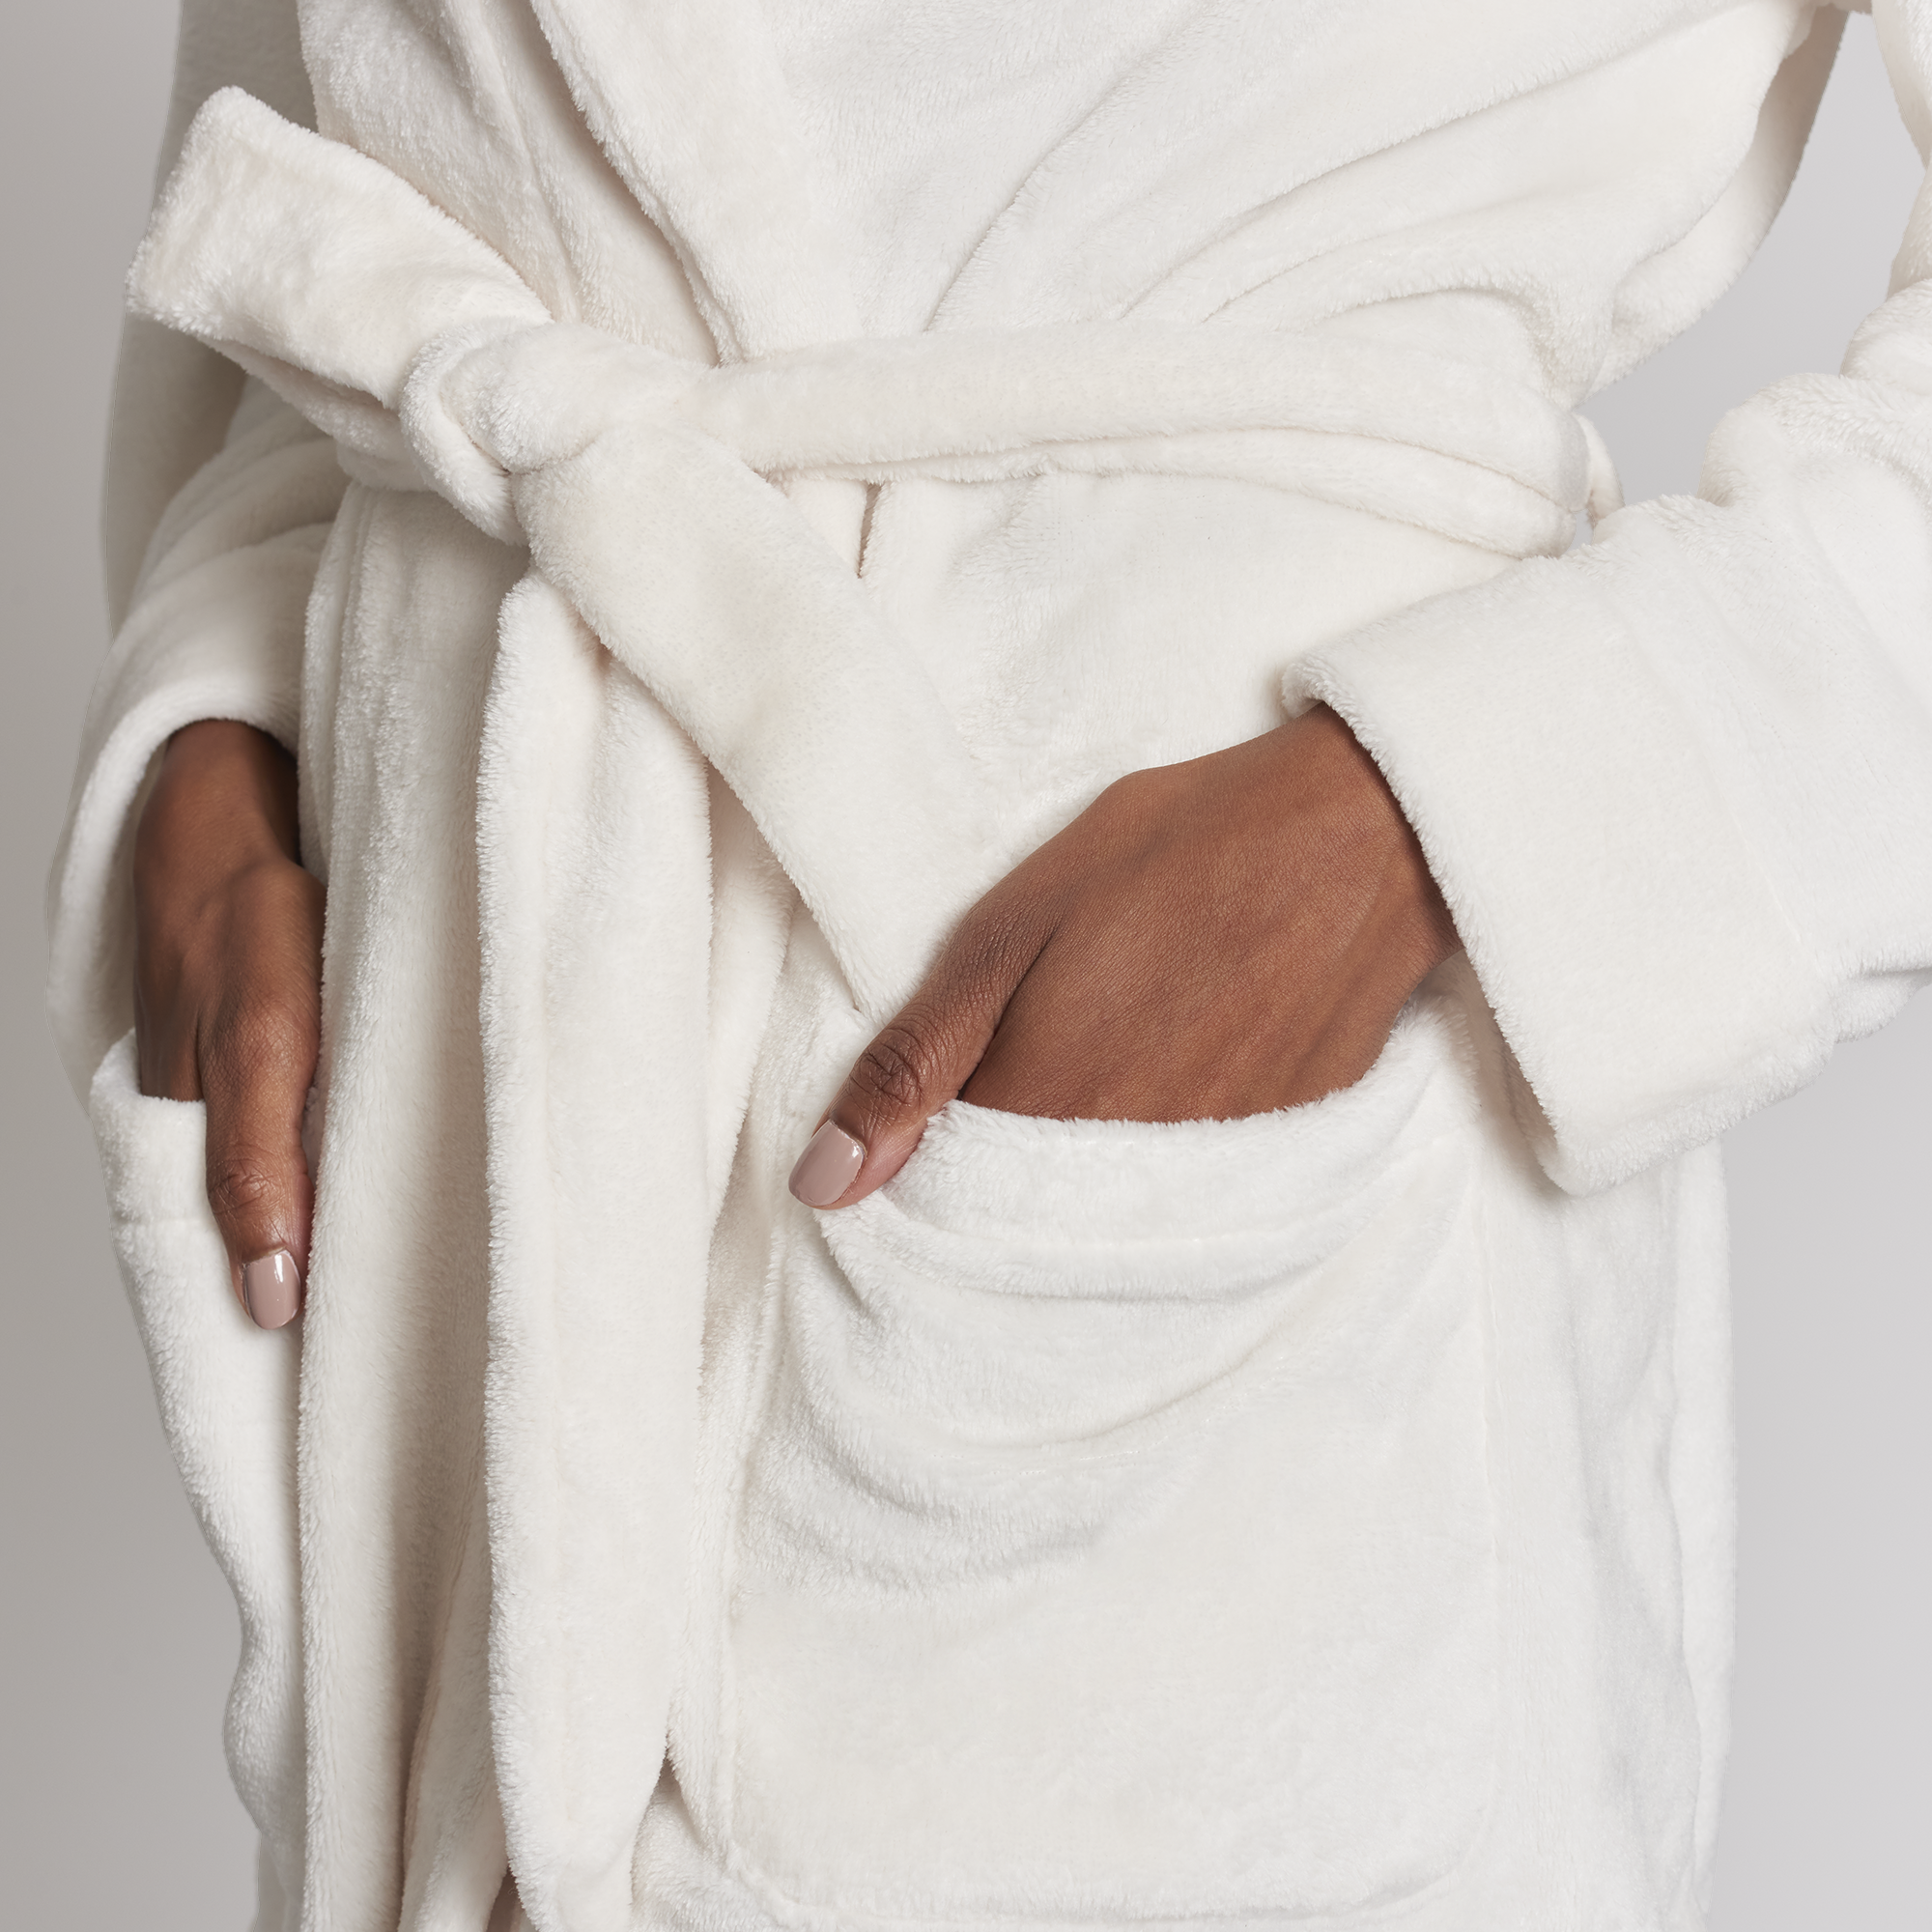 Plush Fleece Robe